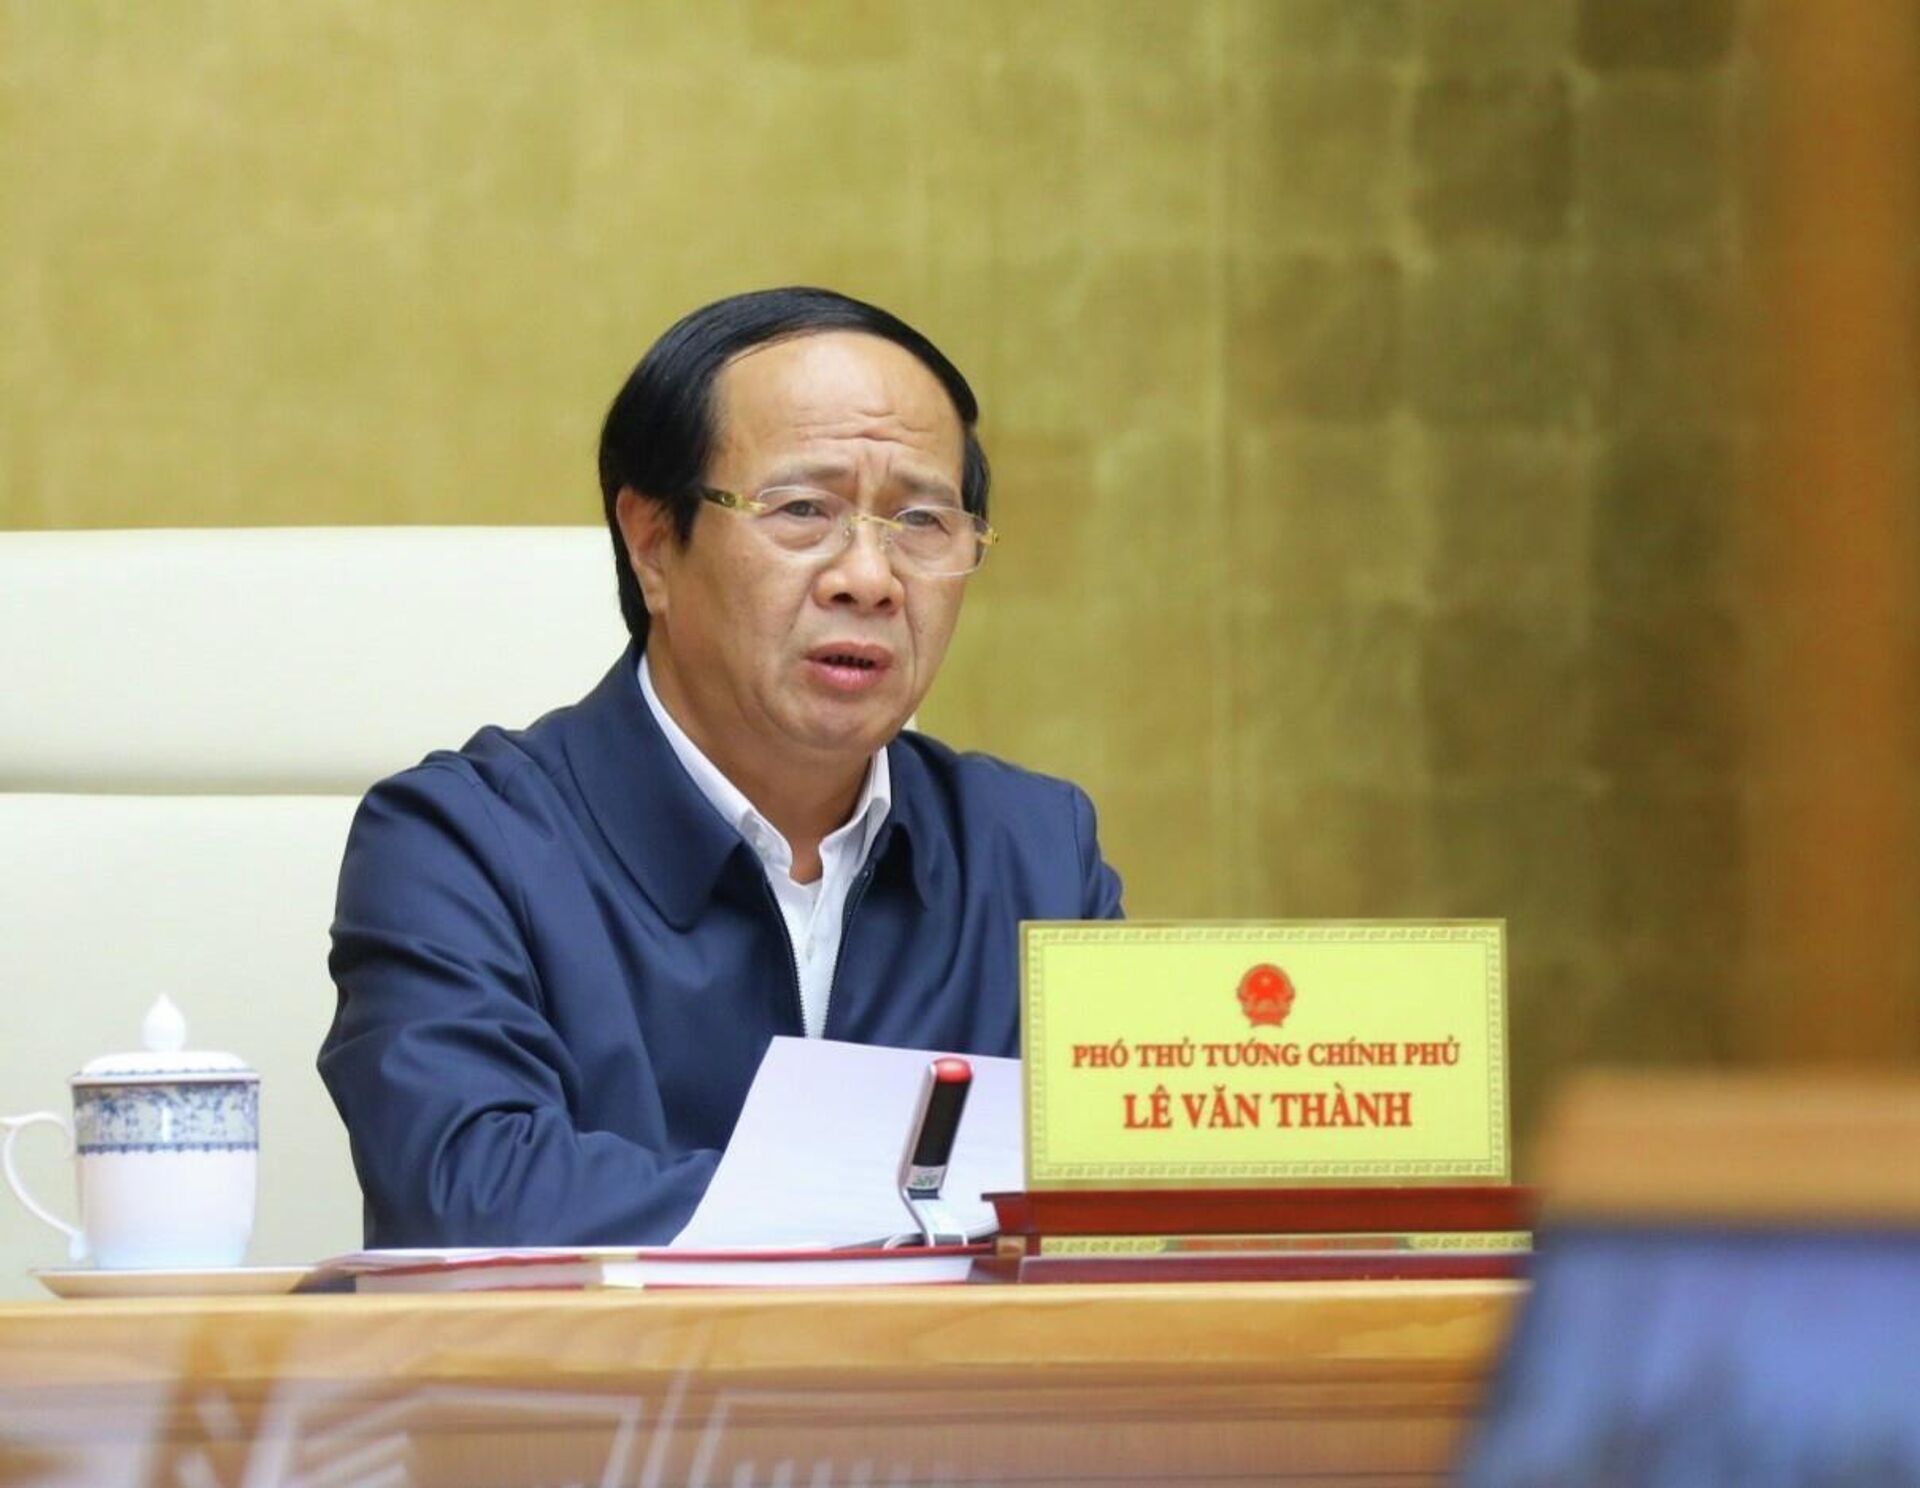 Phó Thủ tướng Lê Văn Thành phát biểu chỉ đạo hội nghị - Sputnik Việt Nam, 1920, 18.02.2022